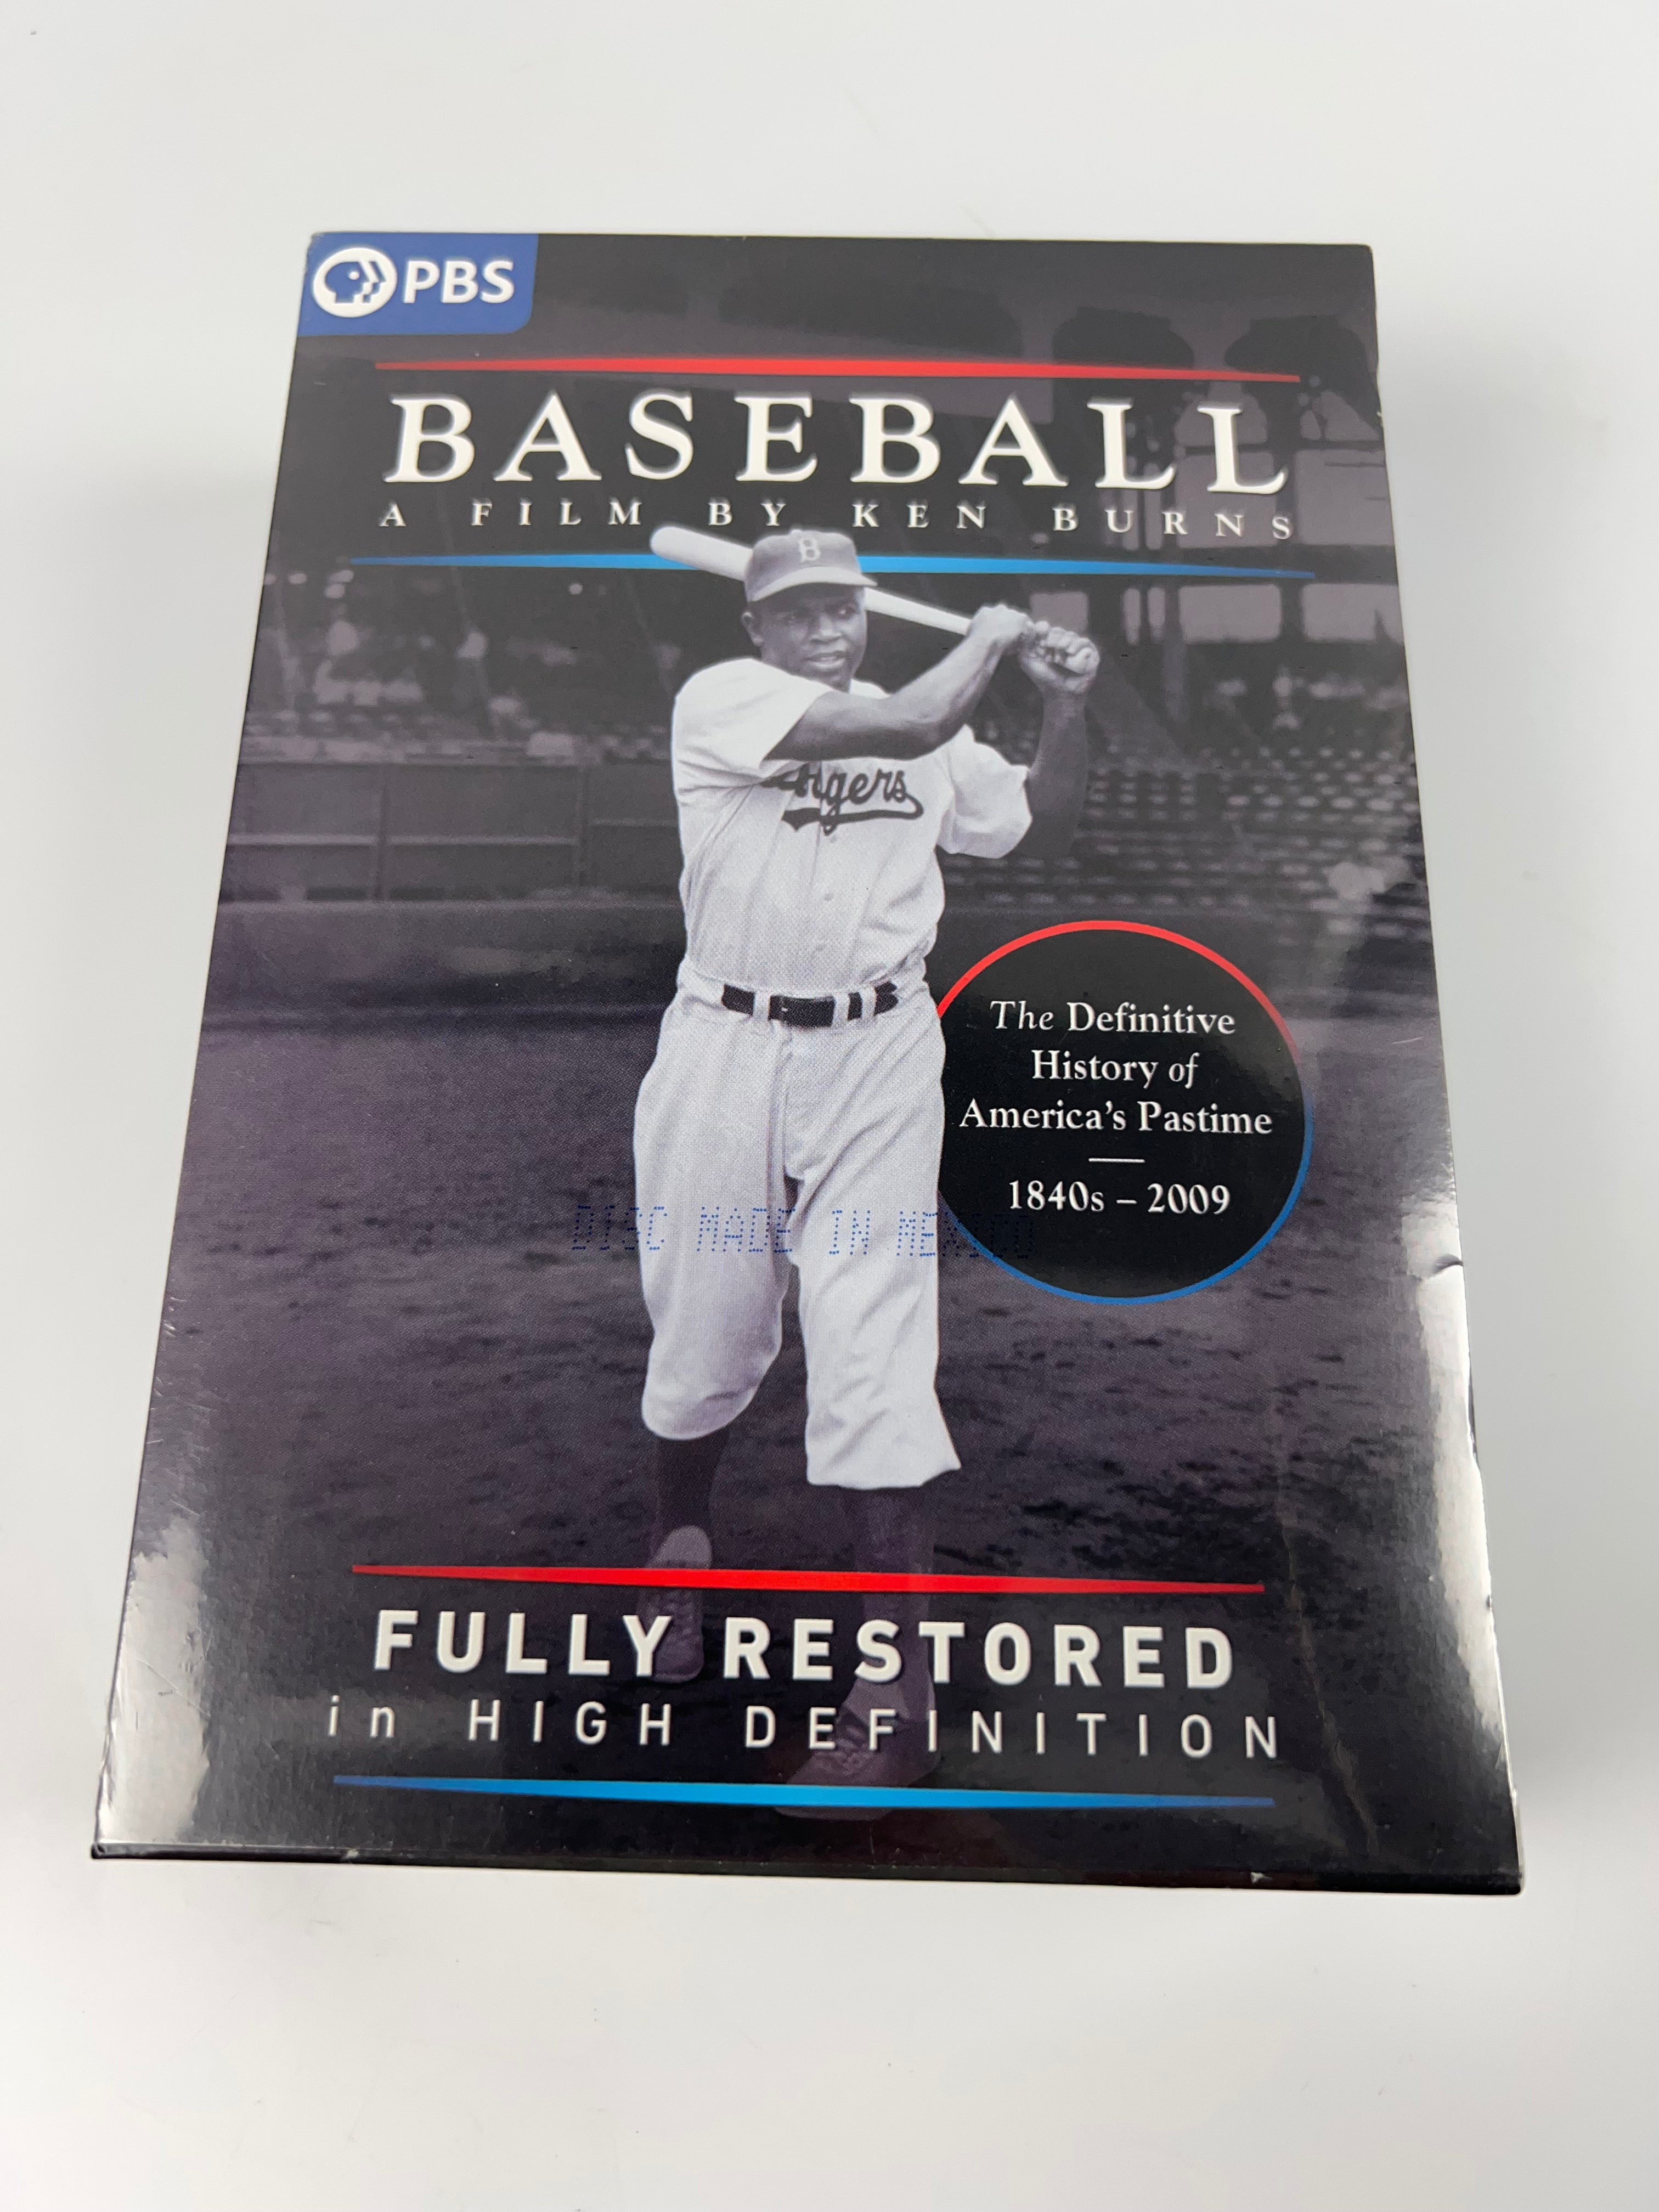 Baseball A Film By Ken Burns (DVD)